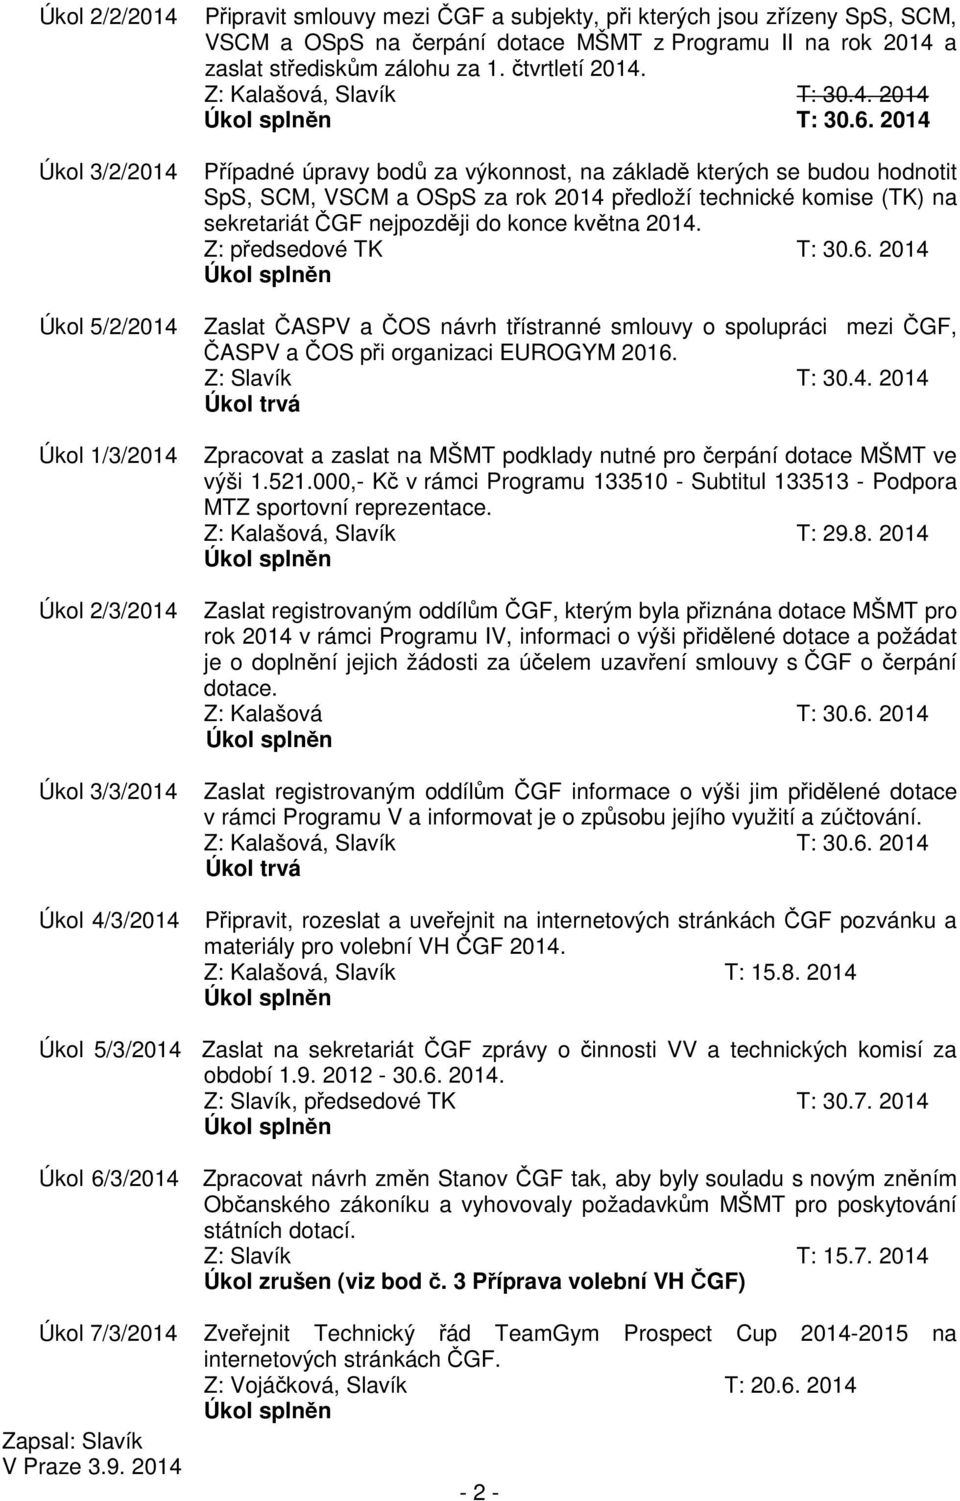 2014 Případné úpravy bodů za výkonnost, na základě kterých se budou hodnotit SpS, SCM, VSCM a OSpS za rok 2014 předloží technické komise (TK) na sekretariát ČGF nejpozději do konce května 2014.